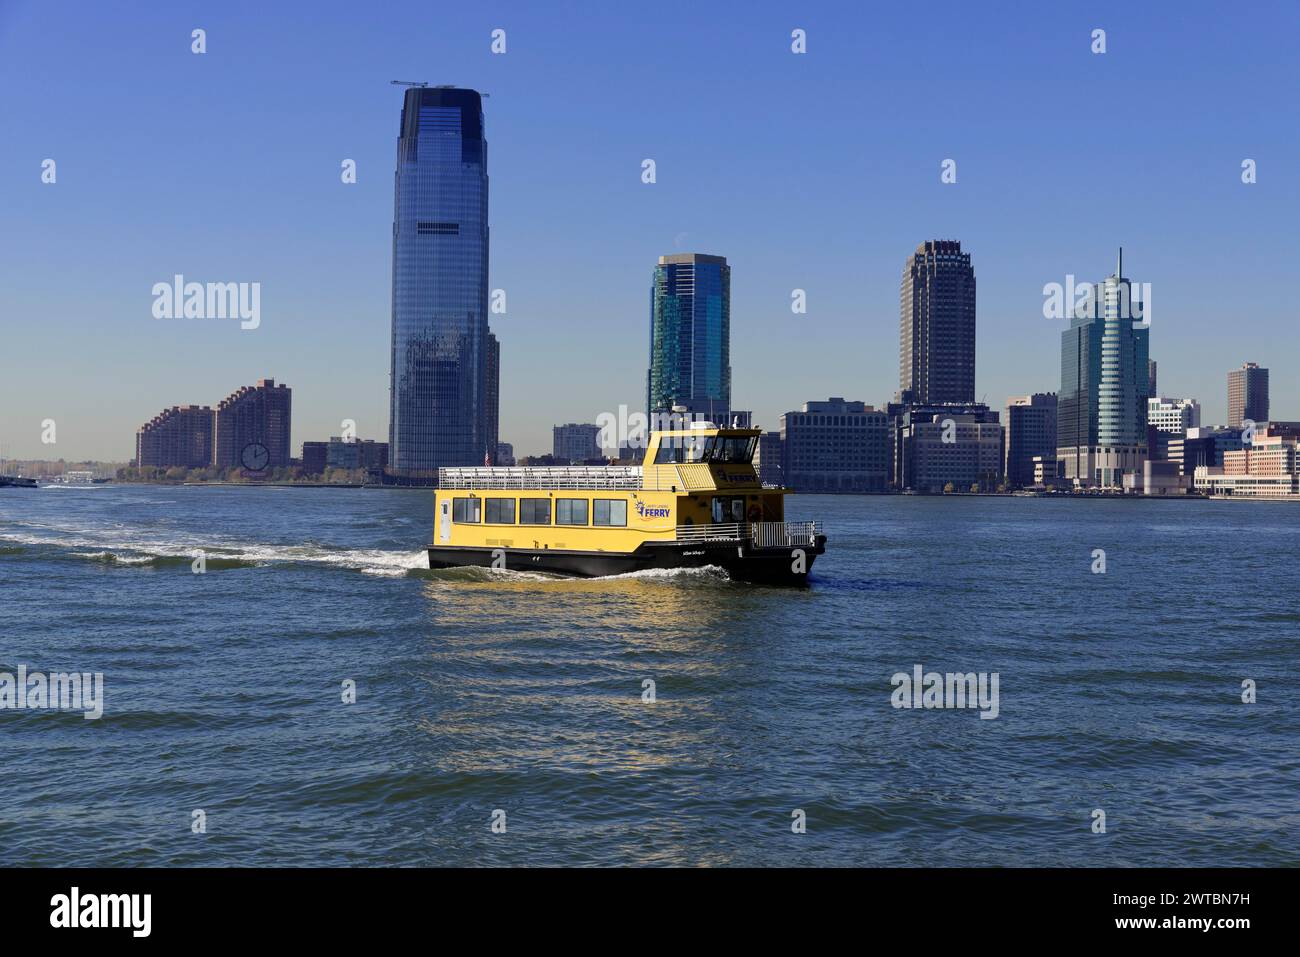 Bateau jaune naviguant sur la rivière en face d'une ligne d'horizon de la ville, centre-ville de Manhattan, Manhattan, New York, États-Unis, Amérique du Nord Banque D'Images